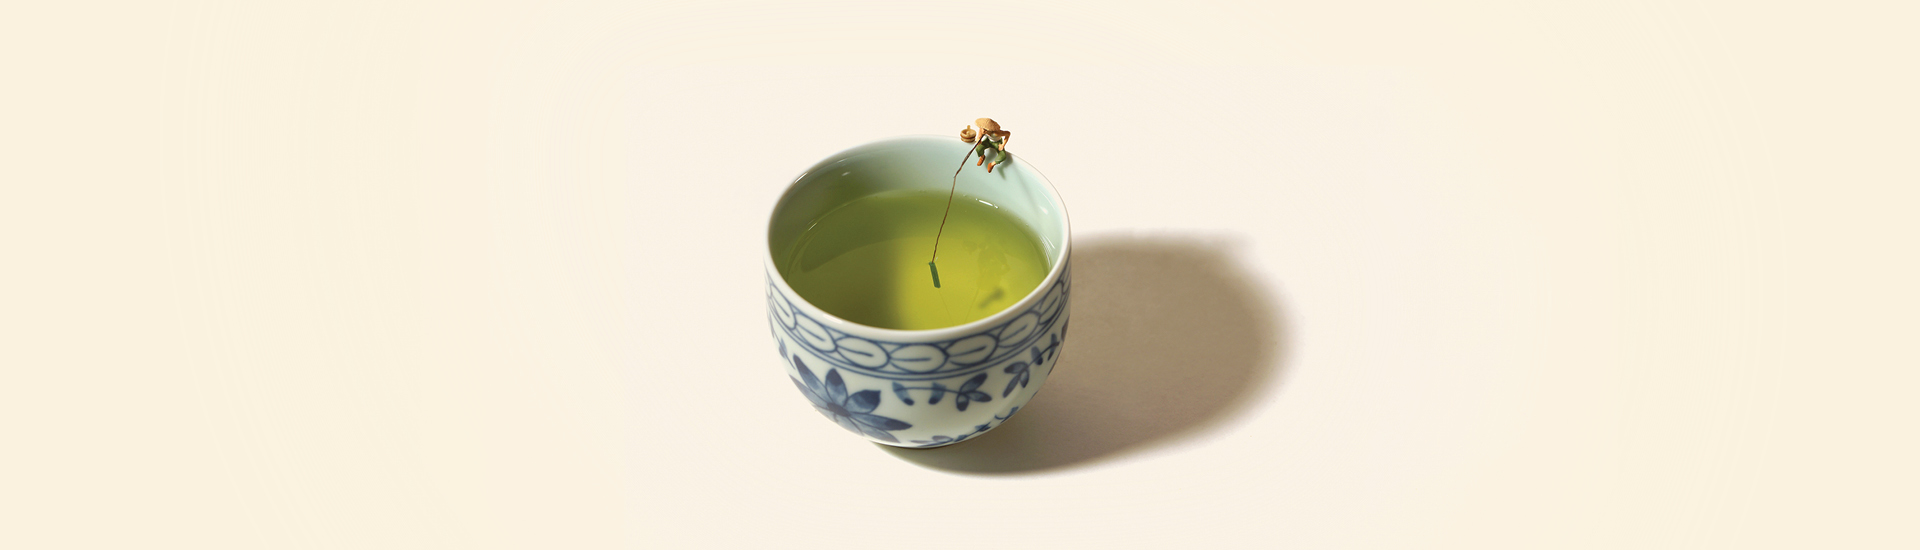 Fotografia de Tatsuya Tanaka, de xícara de chá verde com miniatura de homem pescando.